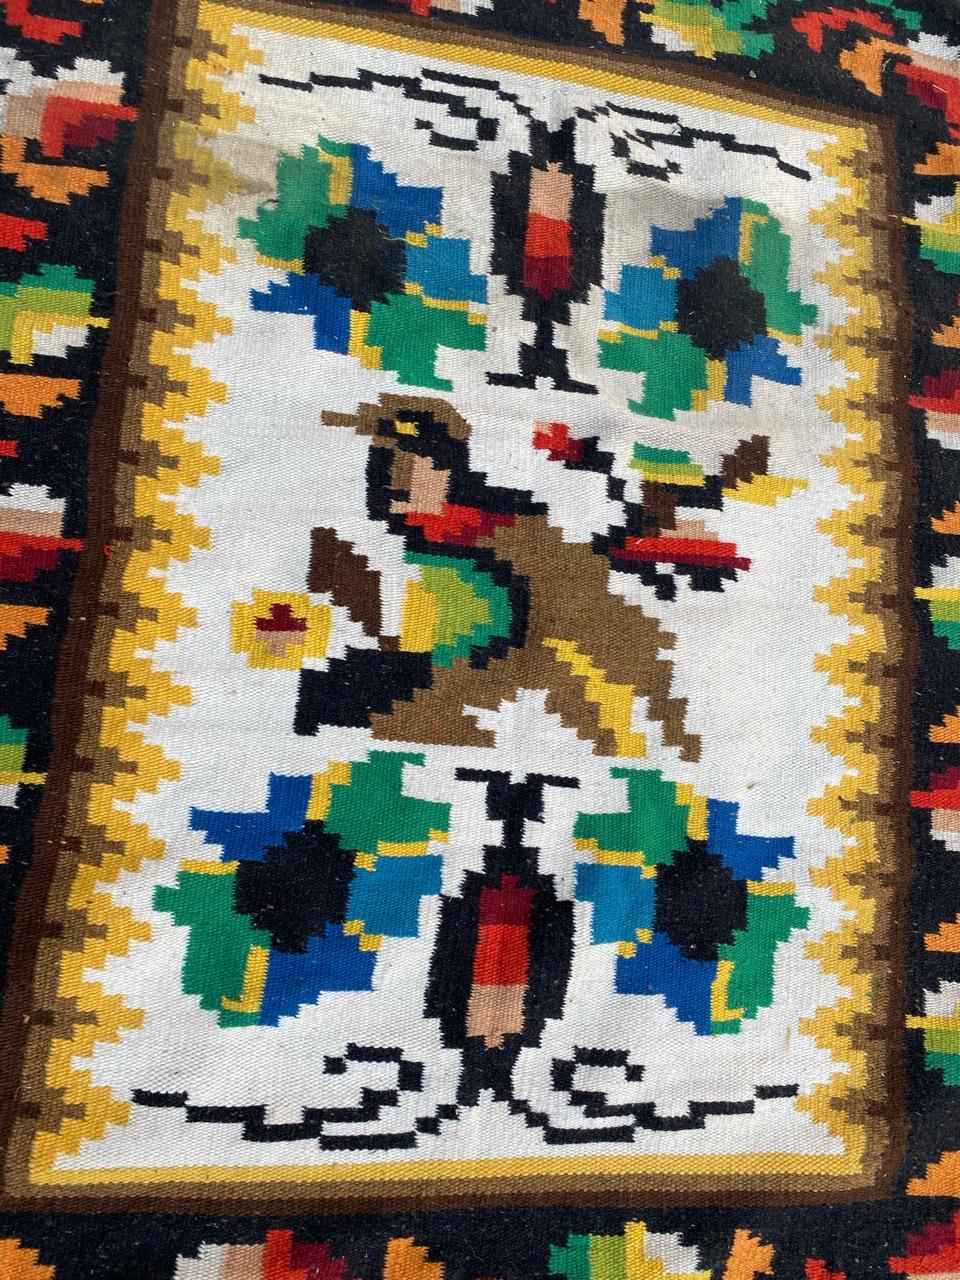 Schöner Navajo-Wandteppich aus der Mitte des Jahrhunderts mit einem einheimischen Design und schönen Farben, komplett handgewebt mit Wolle auf Baumwollbasis.

✨✨✨
